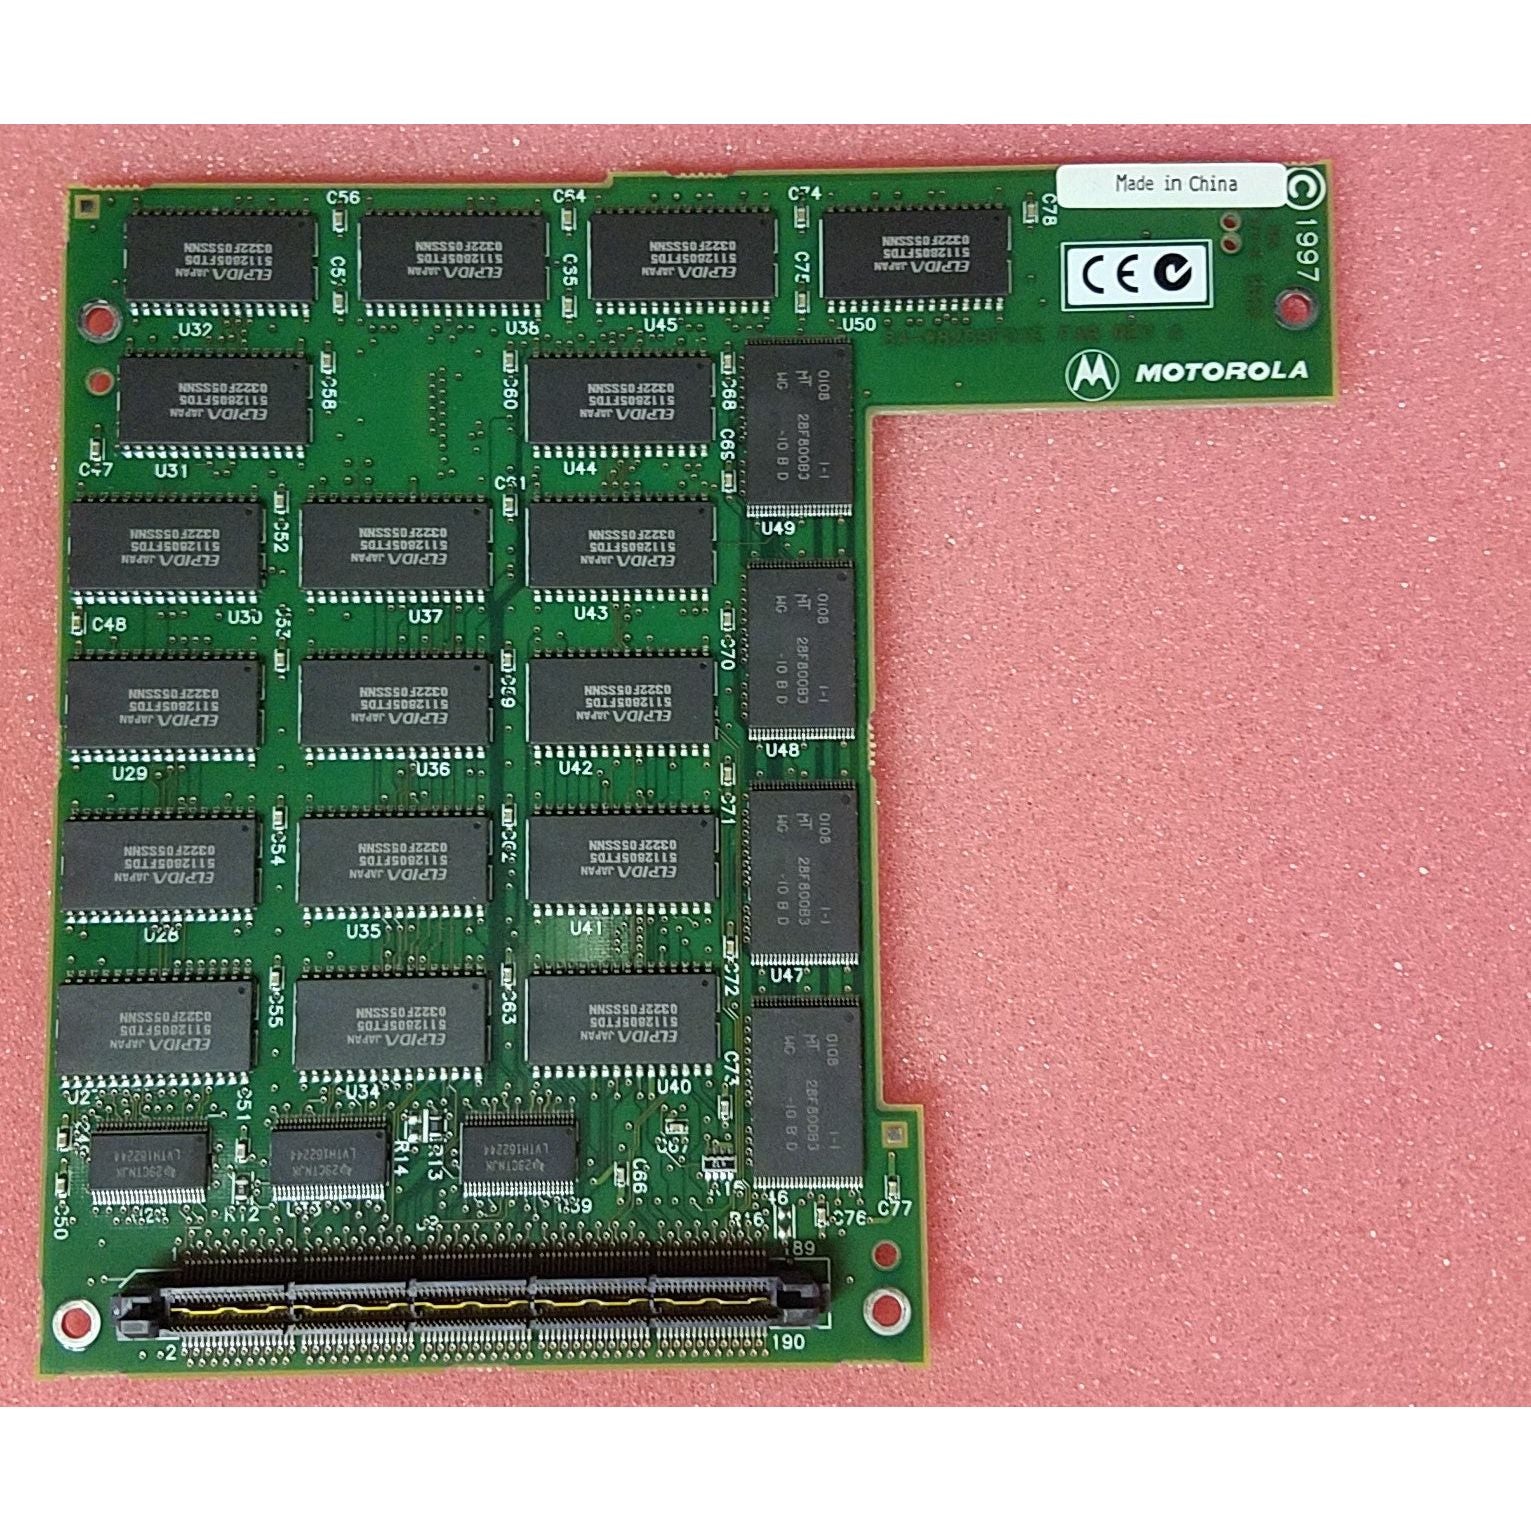 RAM 200-047A | Motorola